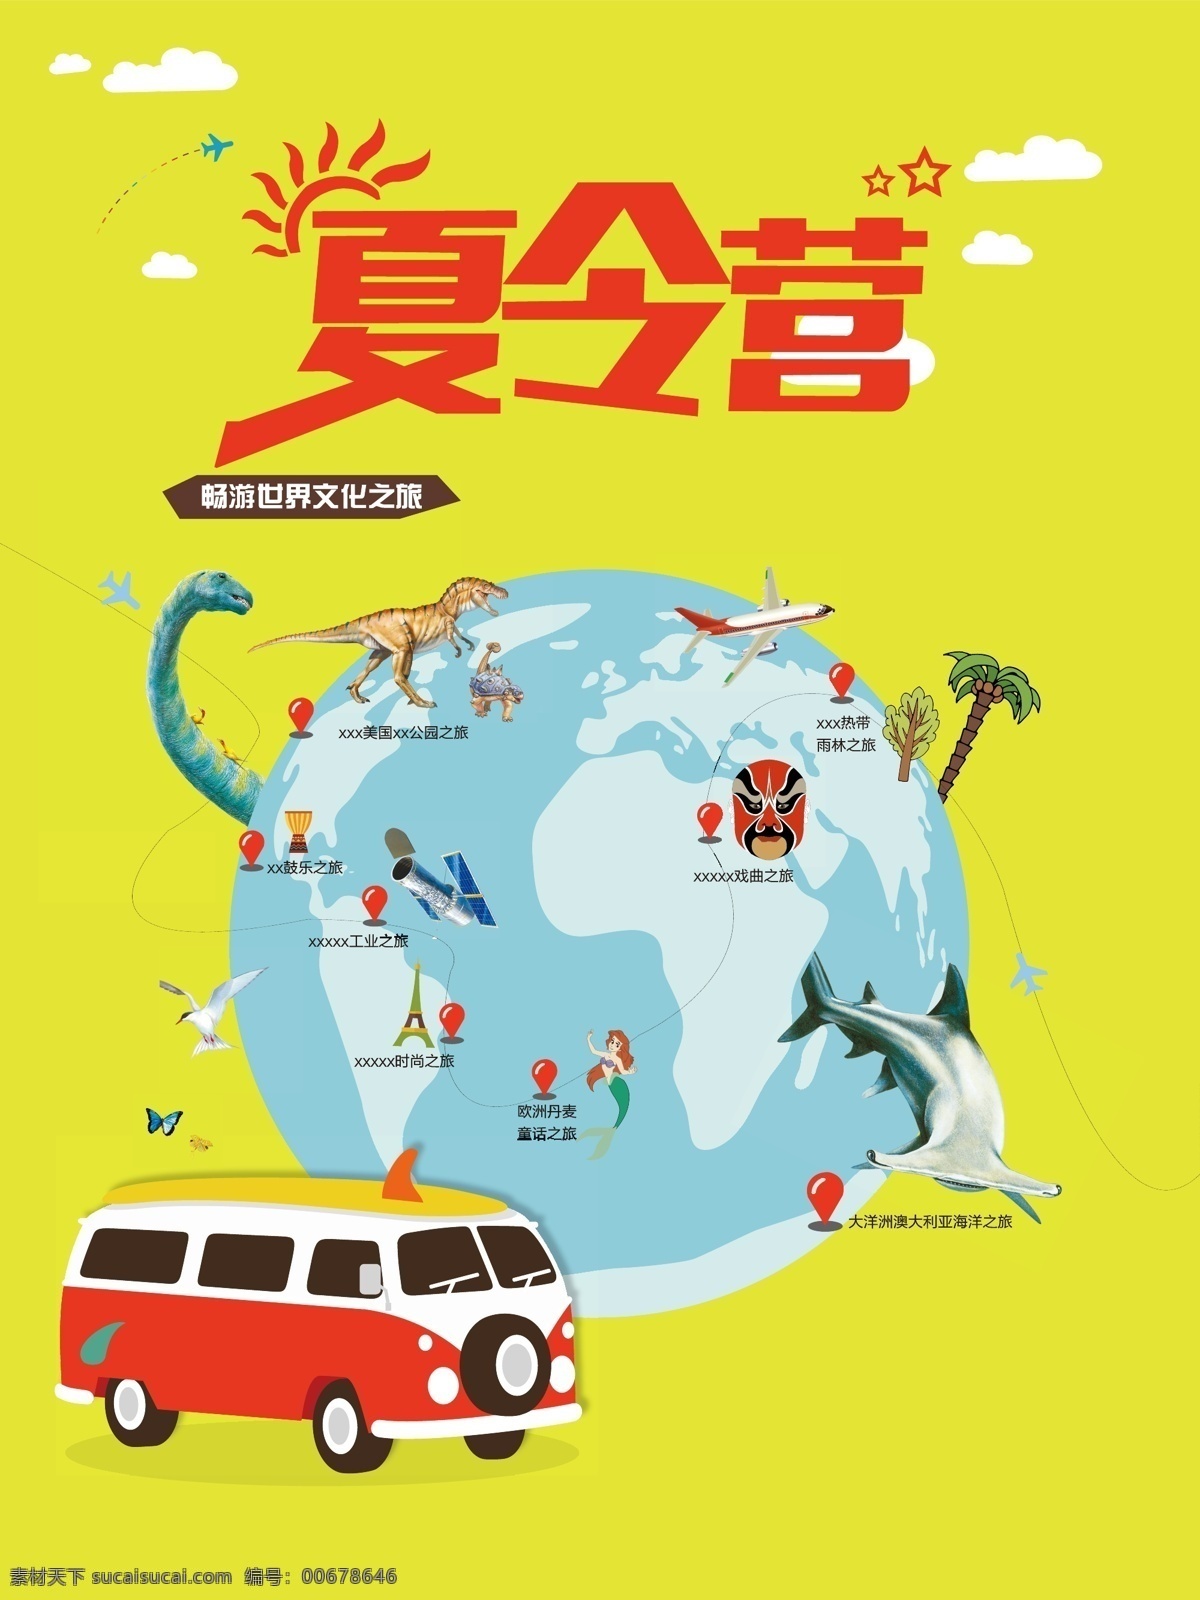 亲子 阅读 夏令营 海报 背景 模板 卡通 地球 汽车 旅游 创意 矢量